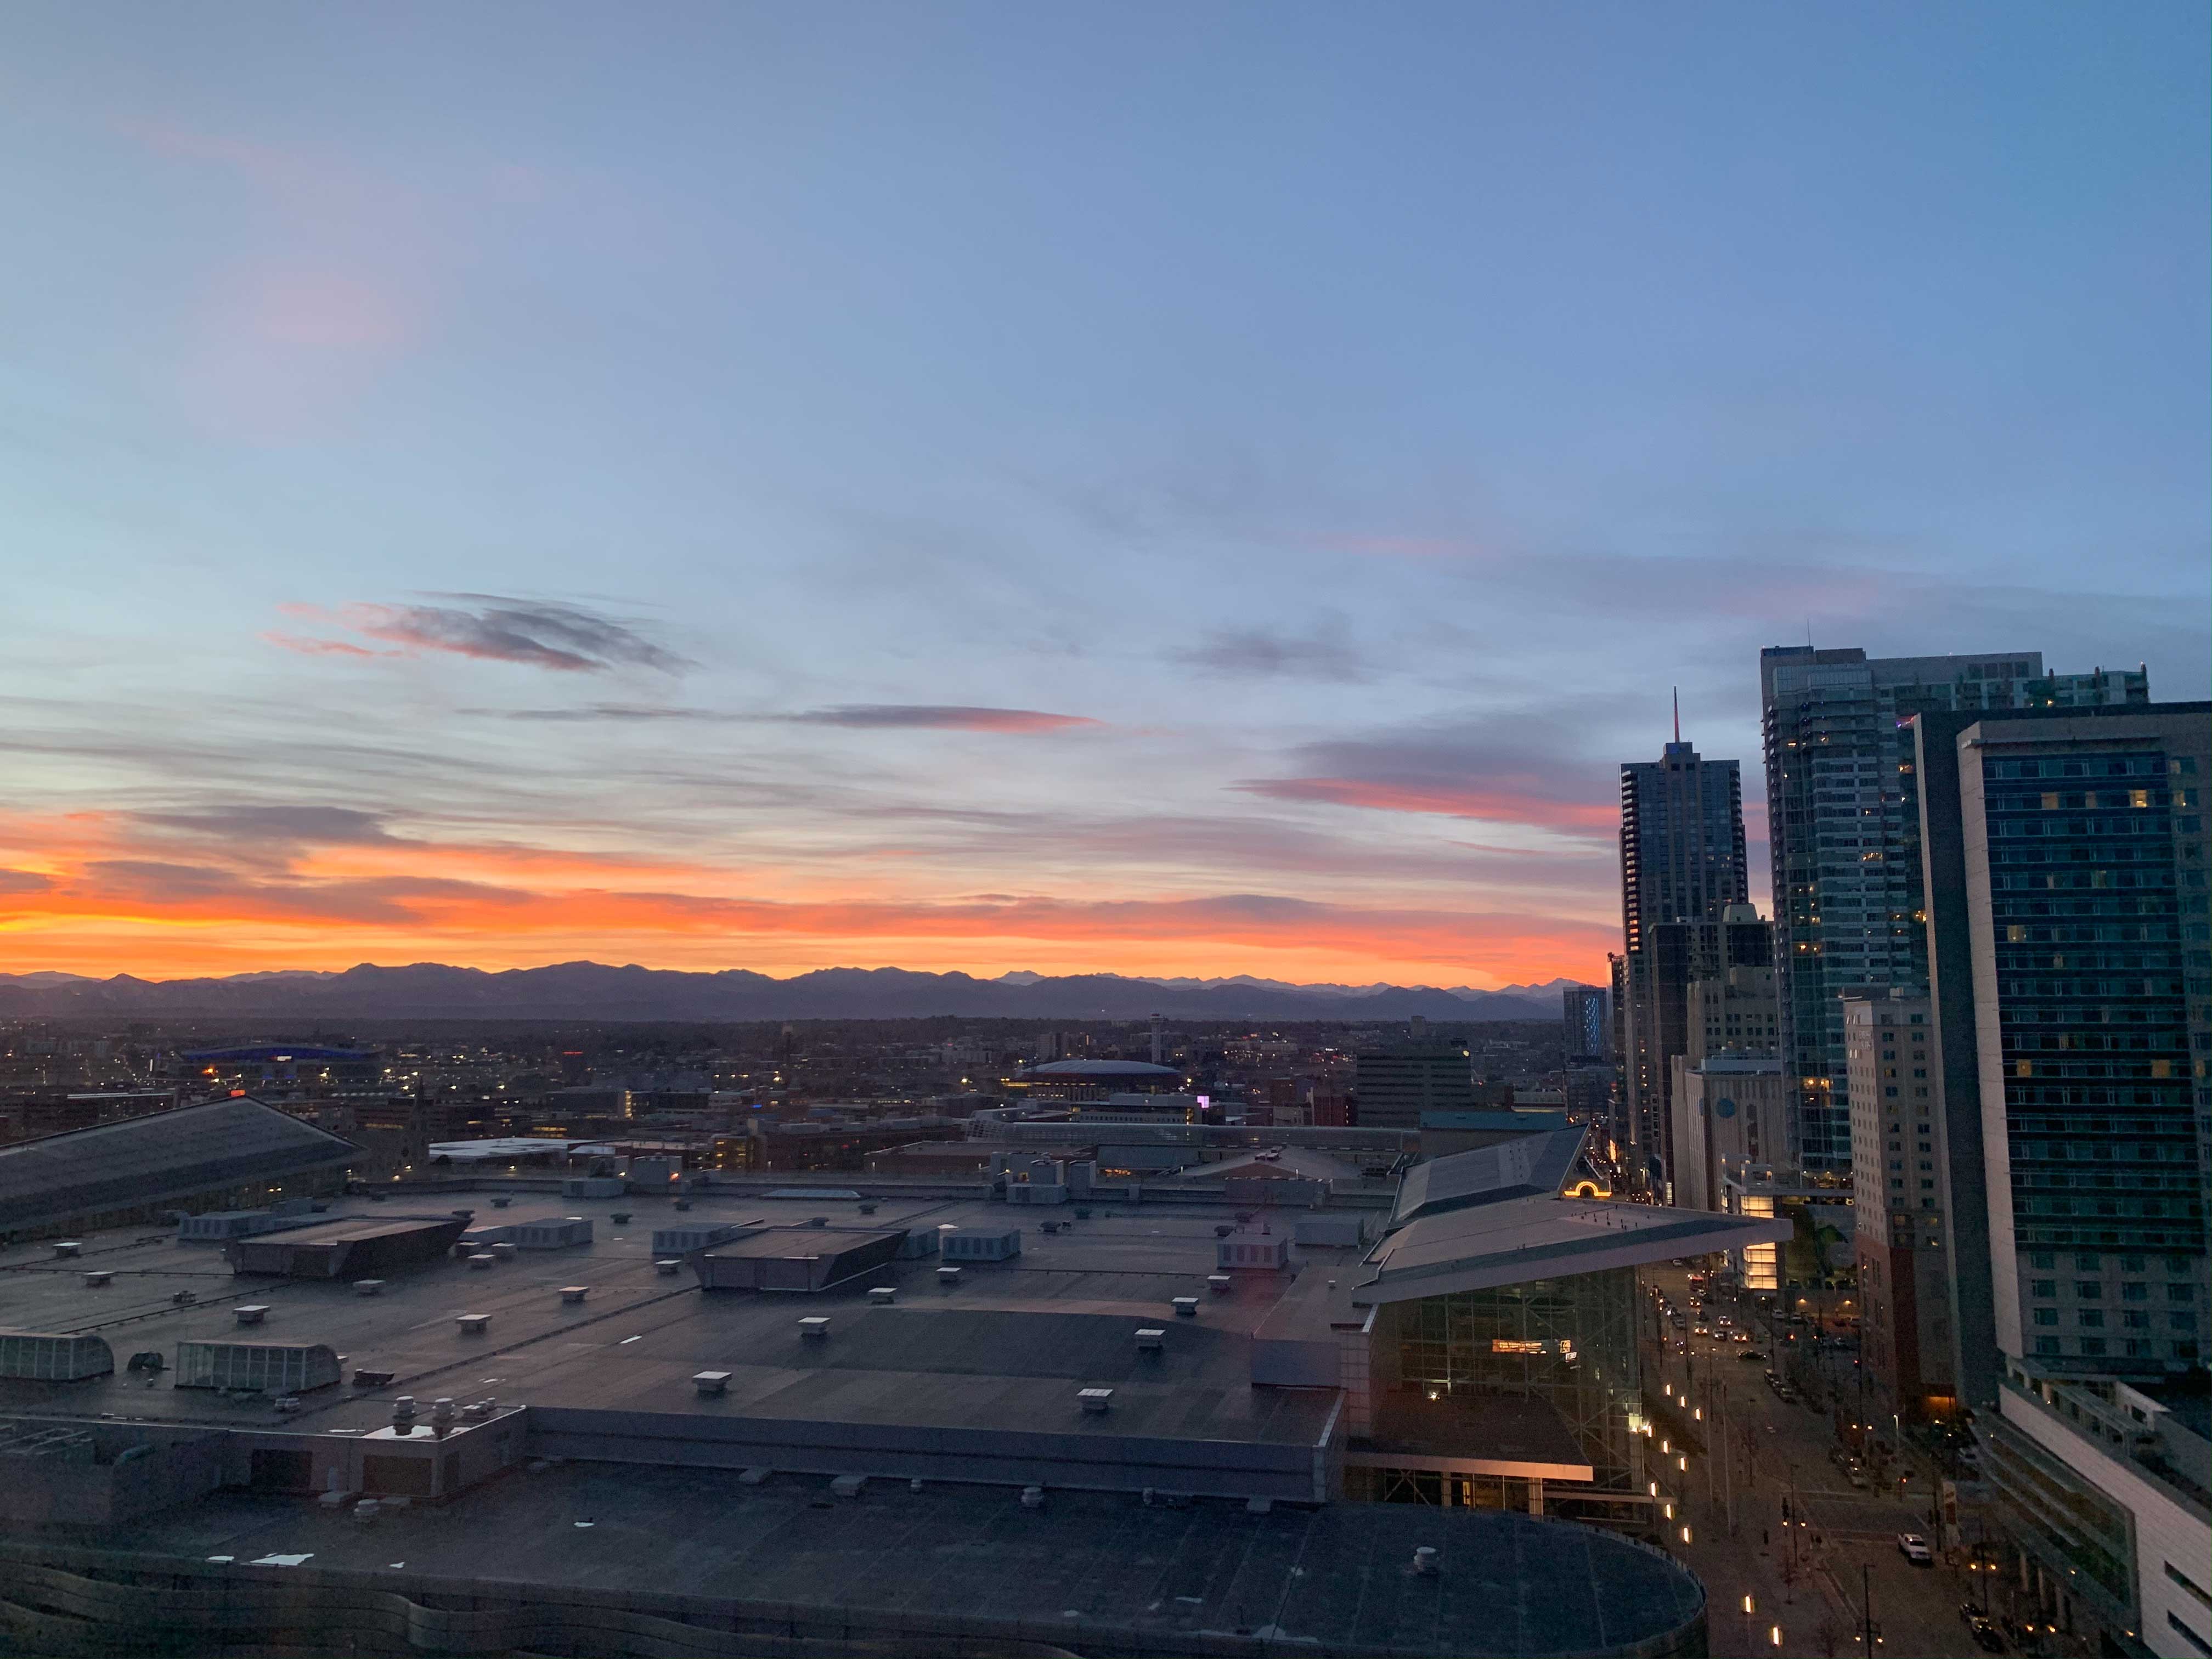 Sunset over Denver